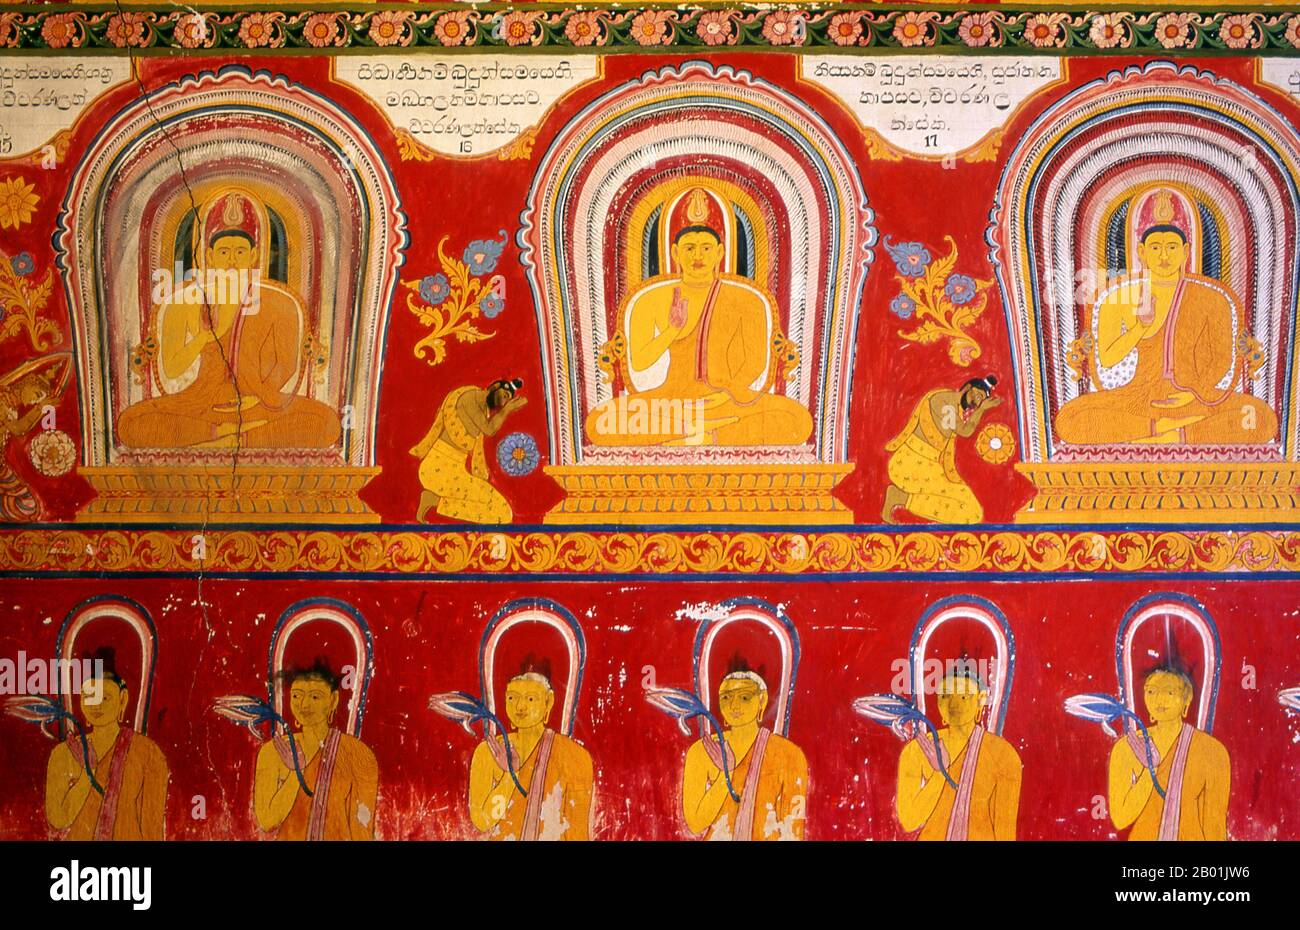 Sri Lanka : Images de Bouddha dans une peinture murale à Asgiriya Vihara (temple), Kandy. Asgiriya Vihara, le « Monastère de la montagne du cheval », a été construit par la famille de Pilima Talauve au début du 19e siècle, sur un terrain attenant à l’ancien terrain de crémation royal. L'Asgiriya Vihara est un temple plutôt petit et discret, mais comme l'un des sièges du pouvoir religieux de Goyigama, d'une grande importance. À partir du début du 19e siècle, pendant l'Esala Perahera, la relique sacrée de la dent serait déposée pour la dernière nuit du festival à l'Asgiriya Vihara. Banque D'Images